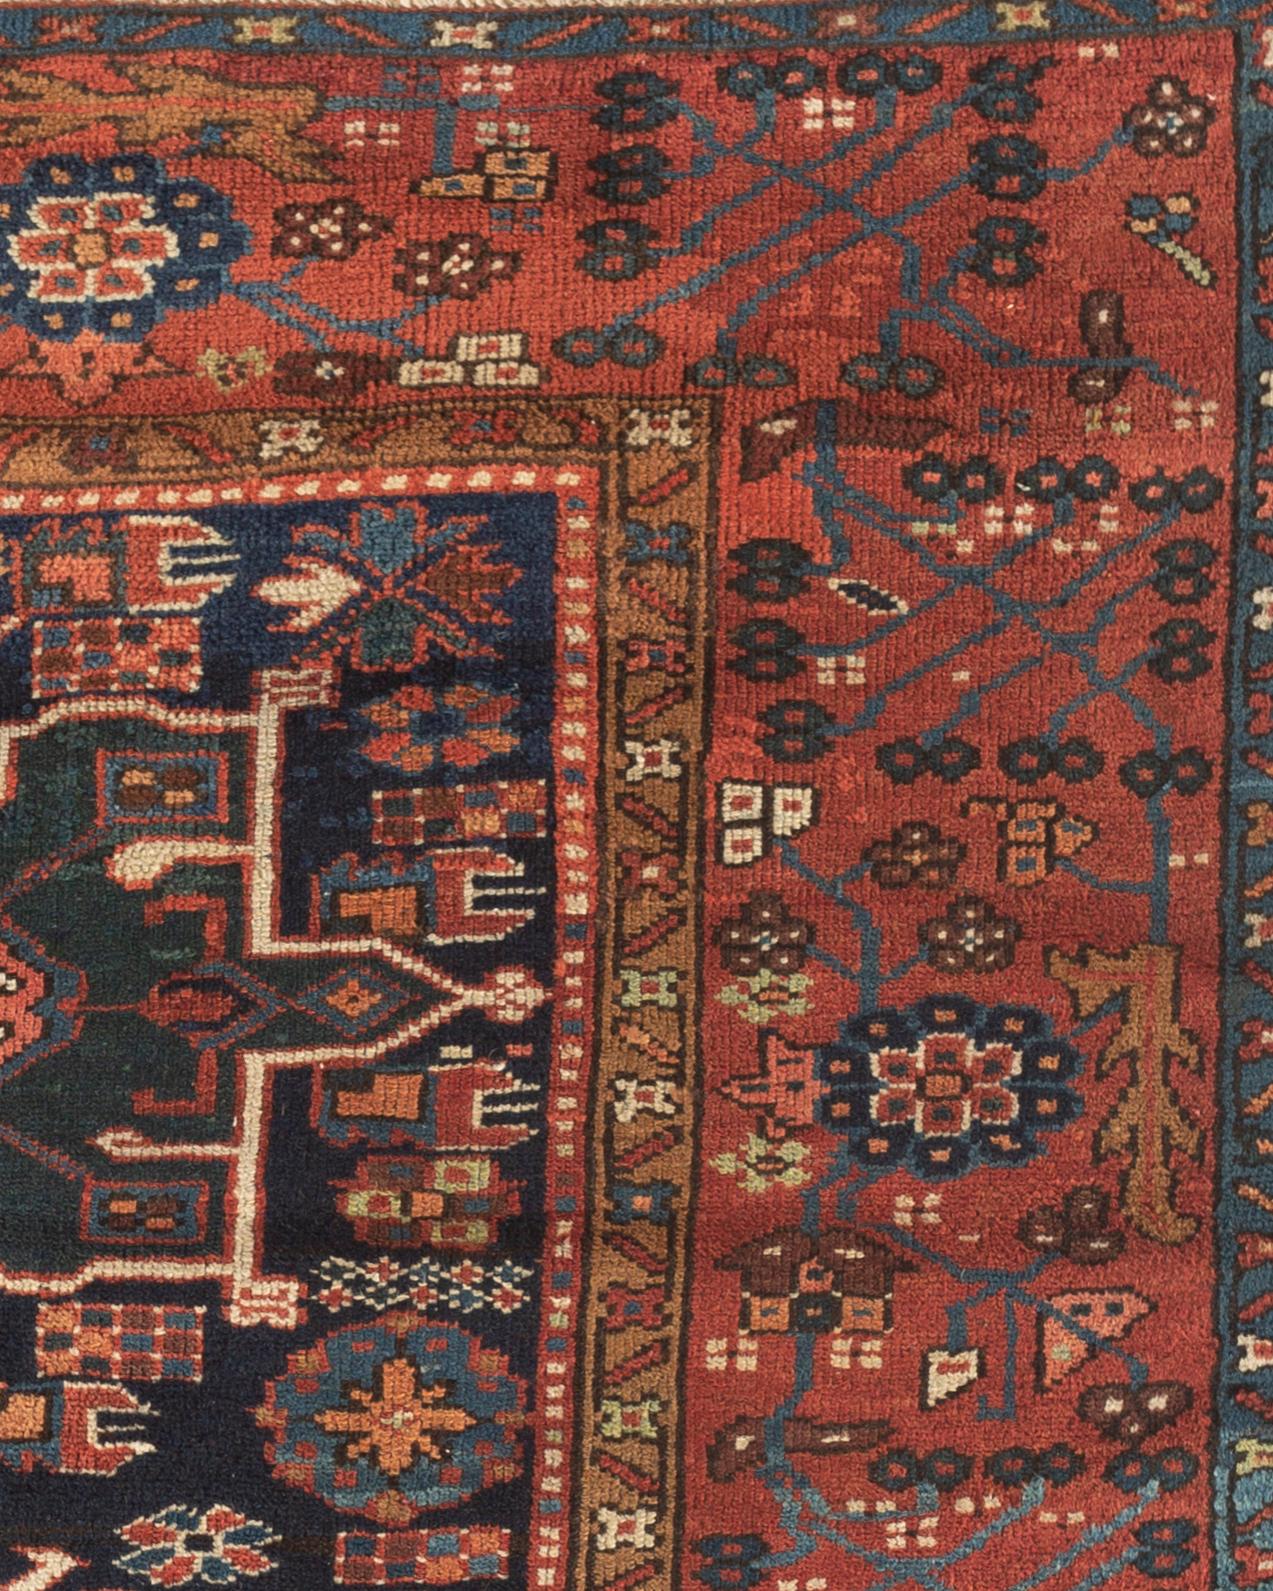 Tapis Karaja ancien, vers 1900. Les tapis antiques Karaja (Montagne noire) sont tissés près de la frontière caucasienne et reprennent les styles et motifs caucasiens. Un riche fond bleu marine à base d'indigo est une caractéristique saillante que ce